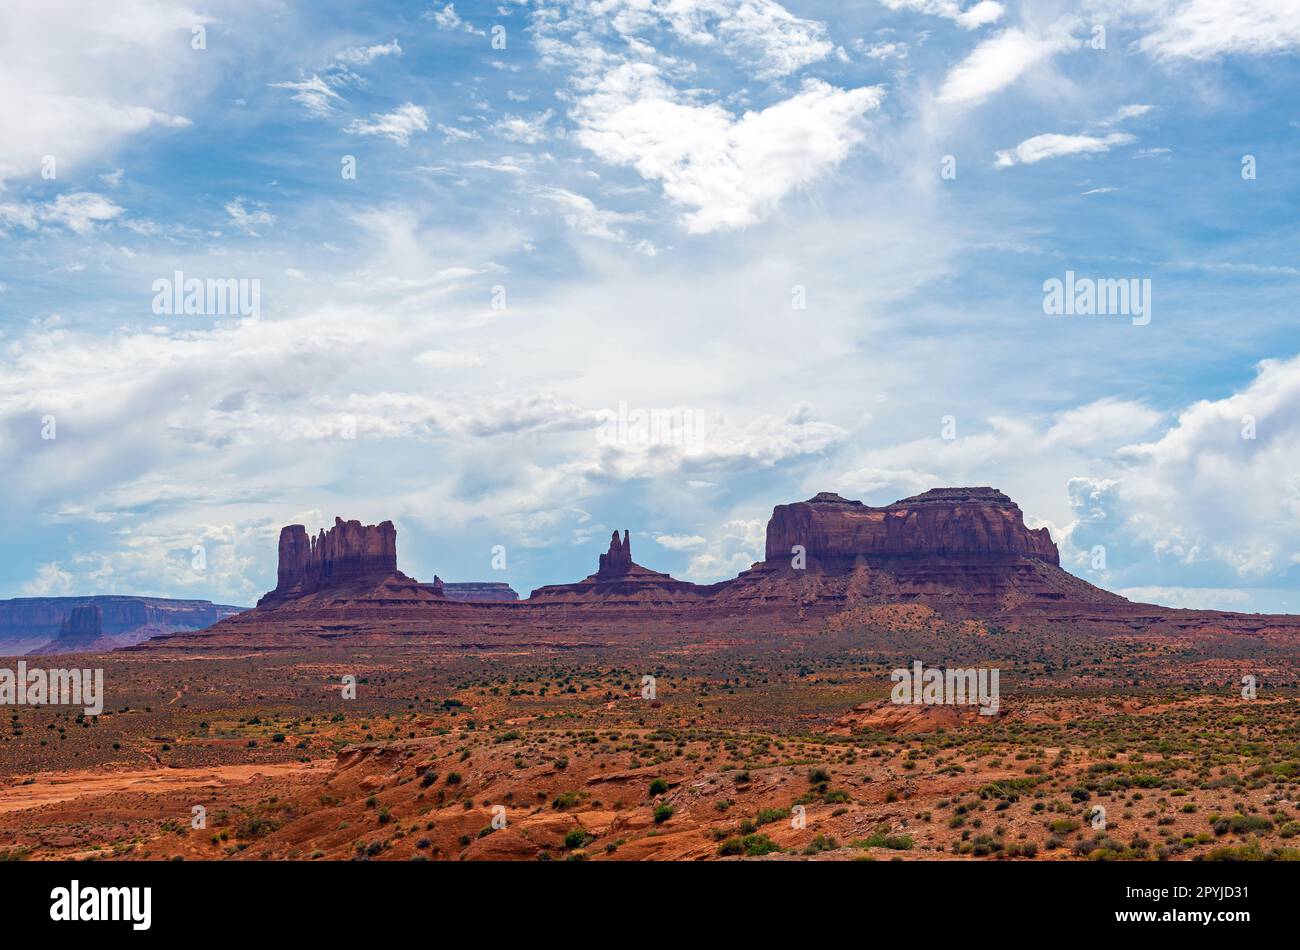 Buttes dans Monument Valley Navajo Tribal Park, Arizona et Utah, États-Unis. Banque D'Images